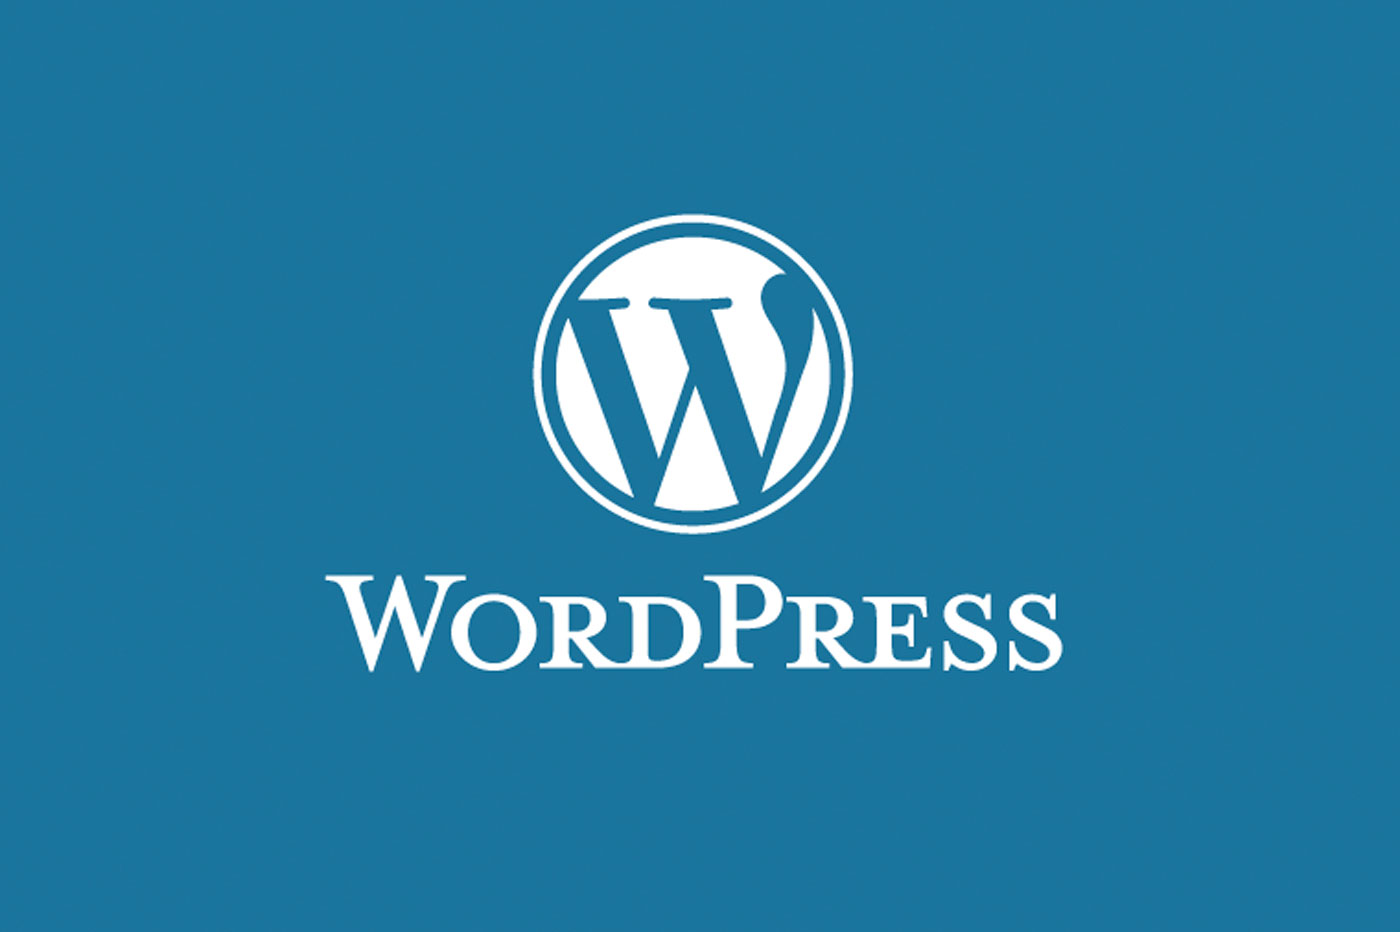 Wordpress demeure le CMS le plus populaire au monde